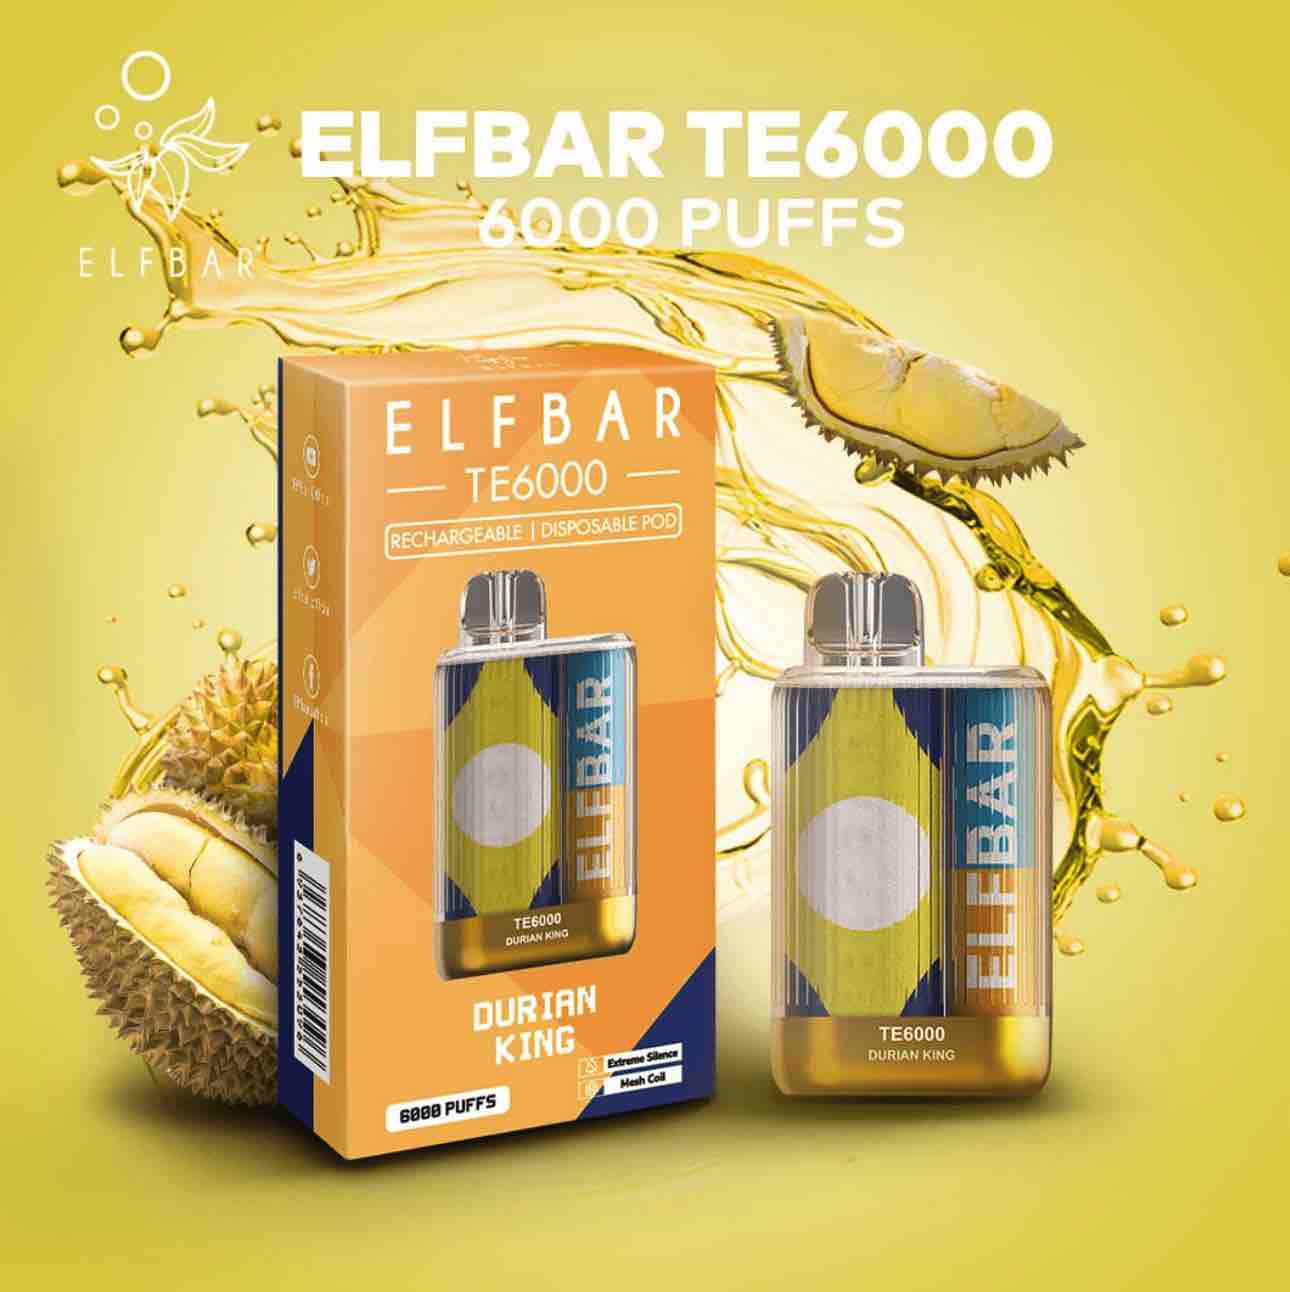 ELF BAR TE6000 - Durian King (6000 Puffs)